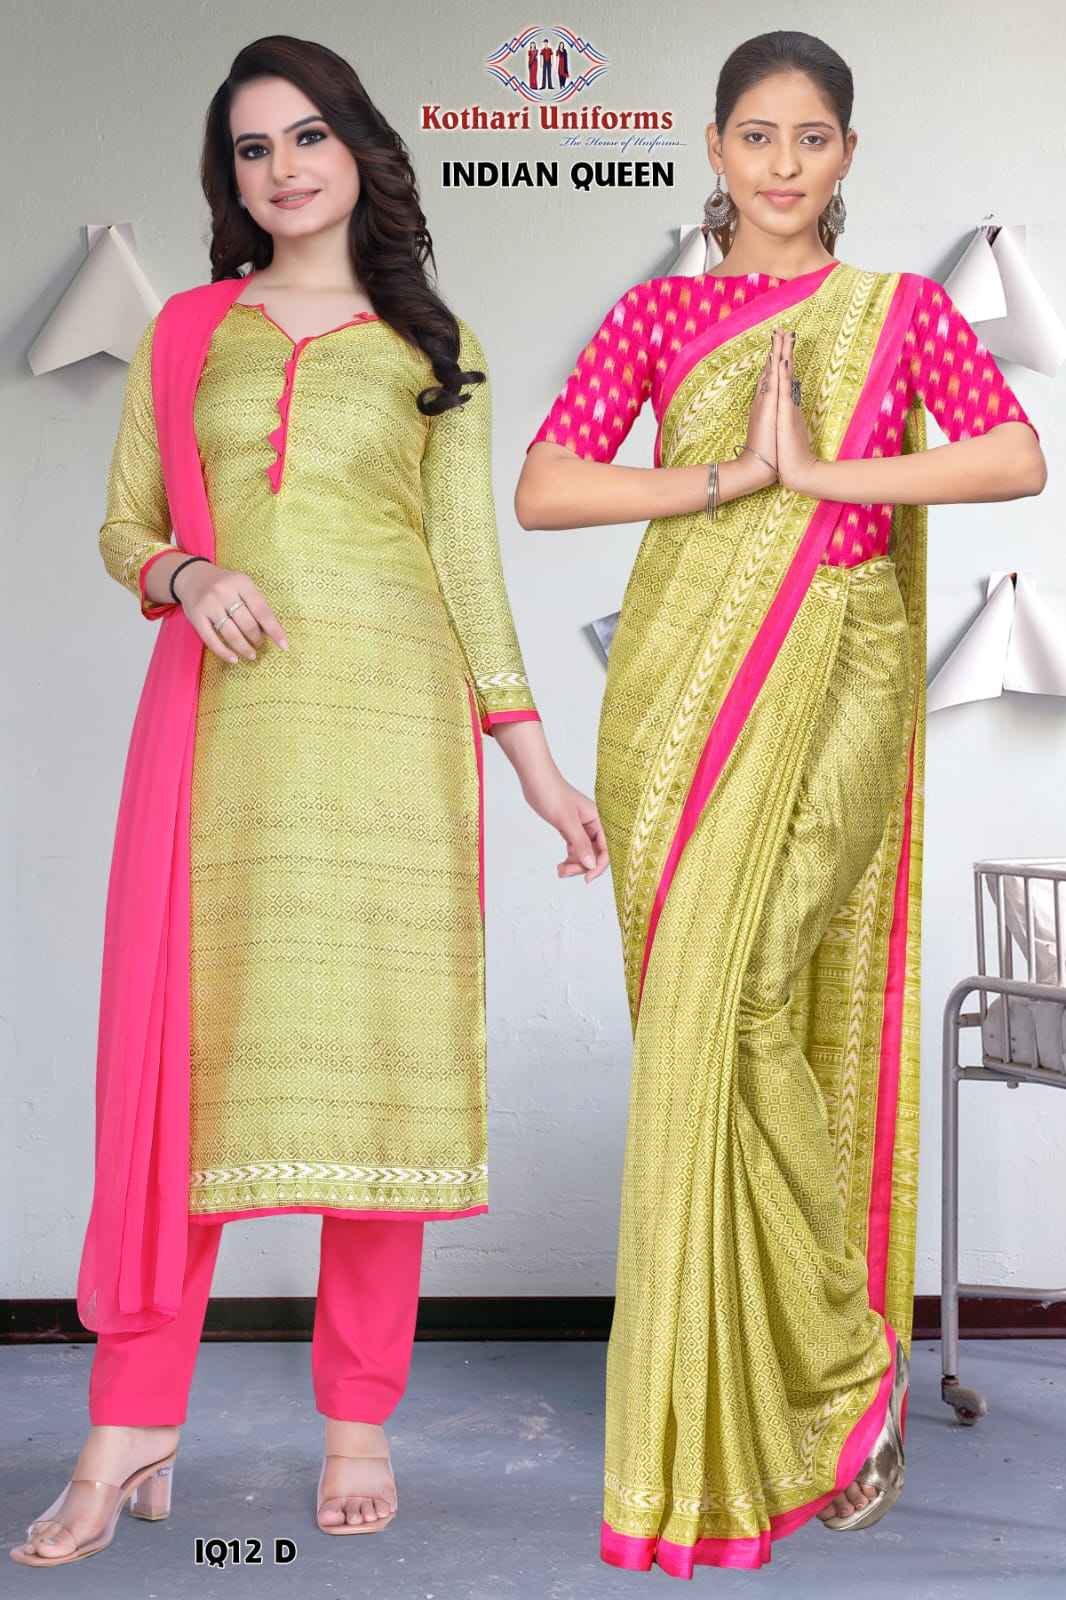 Indian Queen - IQ12 D & CIQ12 D Light Mustard and Pink Women's Premium  Small Printed School Teacher Uniform Saree Salwar Combo